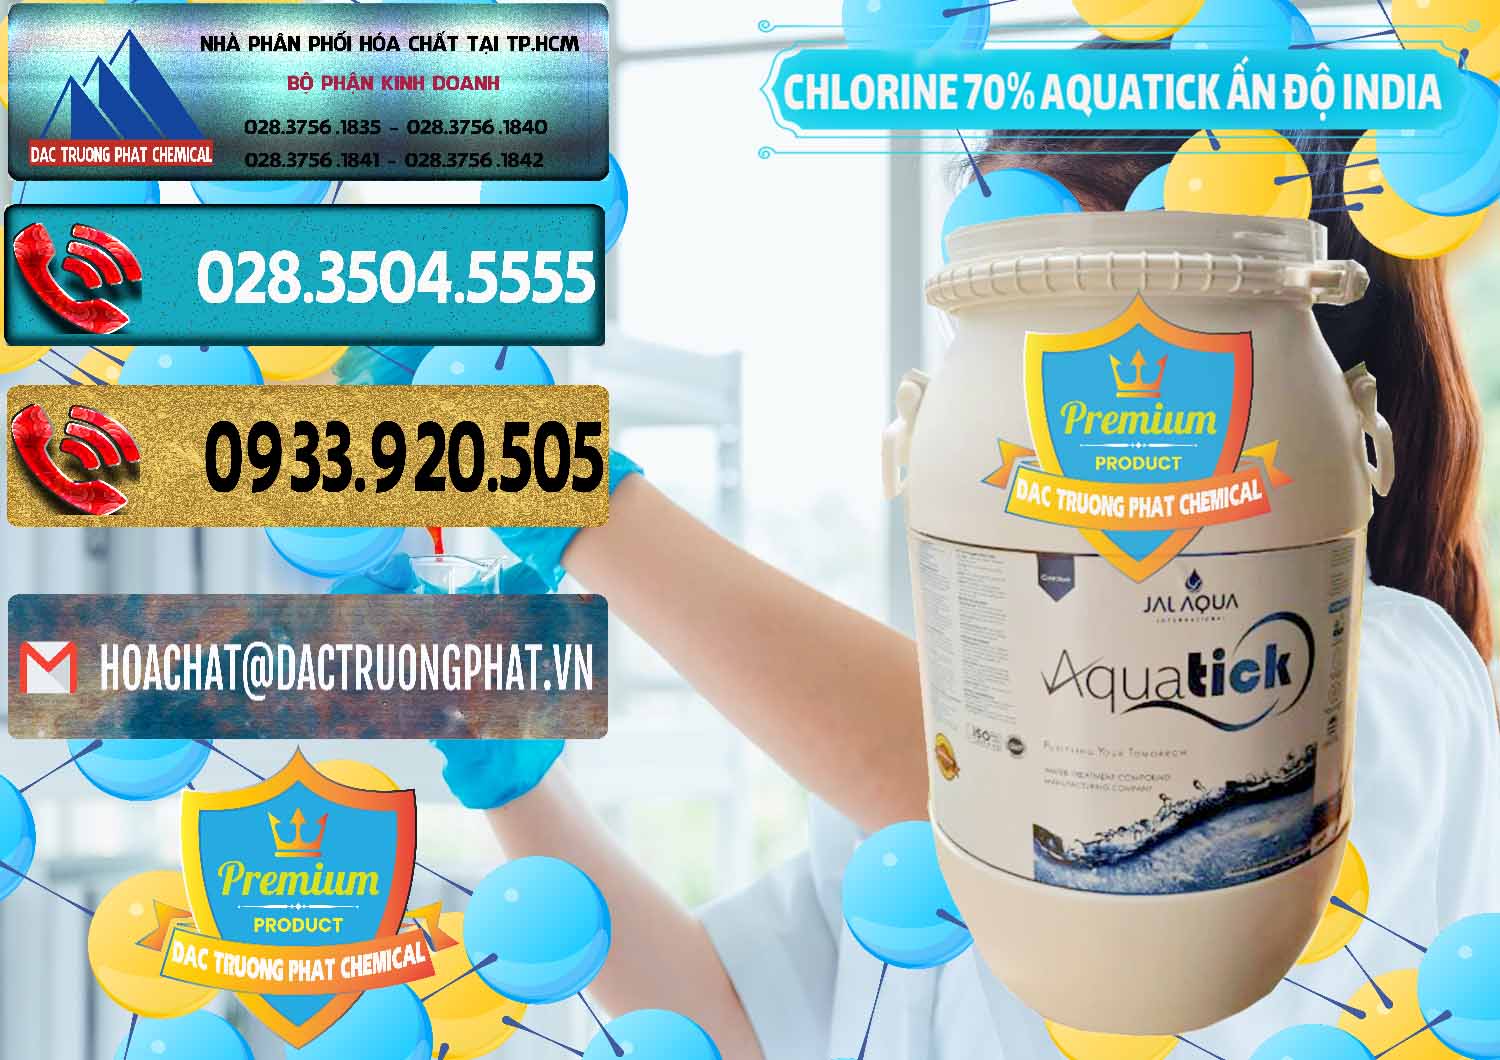 Chuyên cung cấp & bán Chlorine – Clorin 70% Aquatick Jal Aqua Ấn Độ India - 0215 - Cty kinh doanh _ phân phối hóa chất tại TP.HCM - hoachatdetnhuom.com